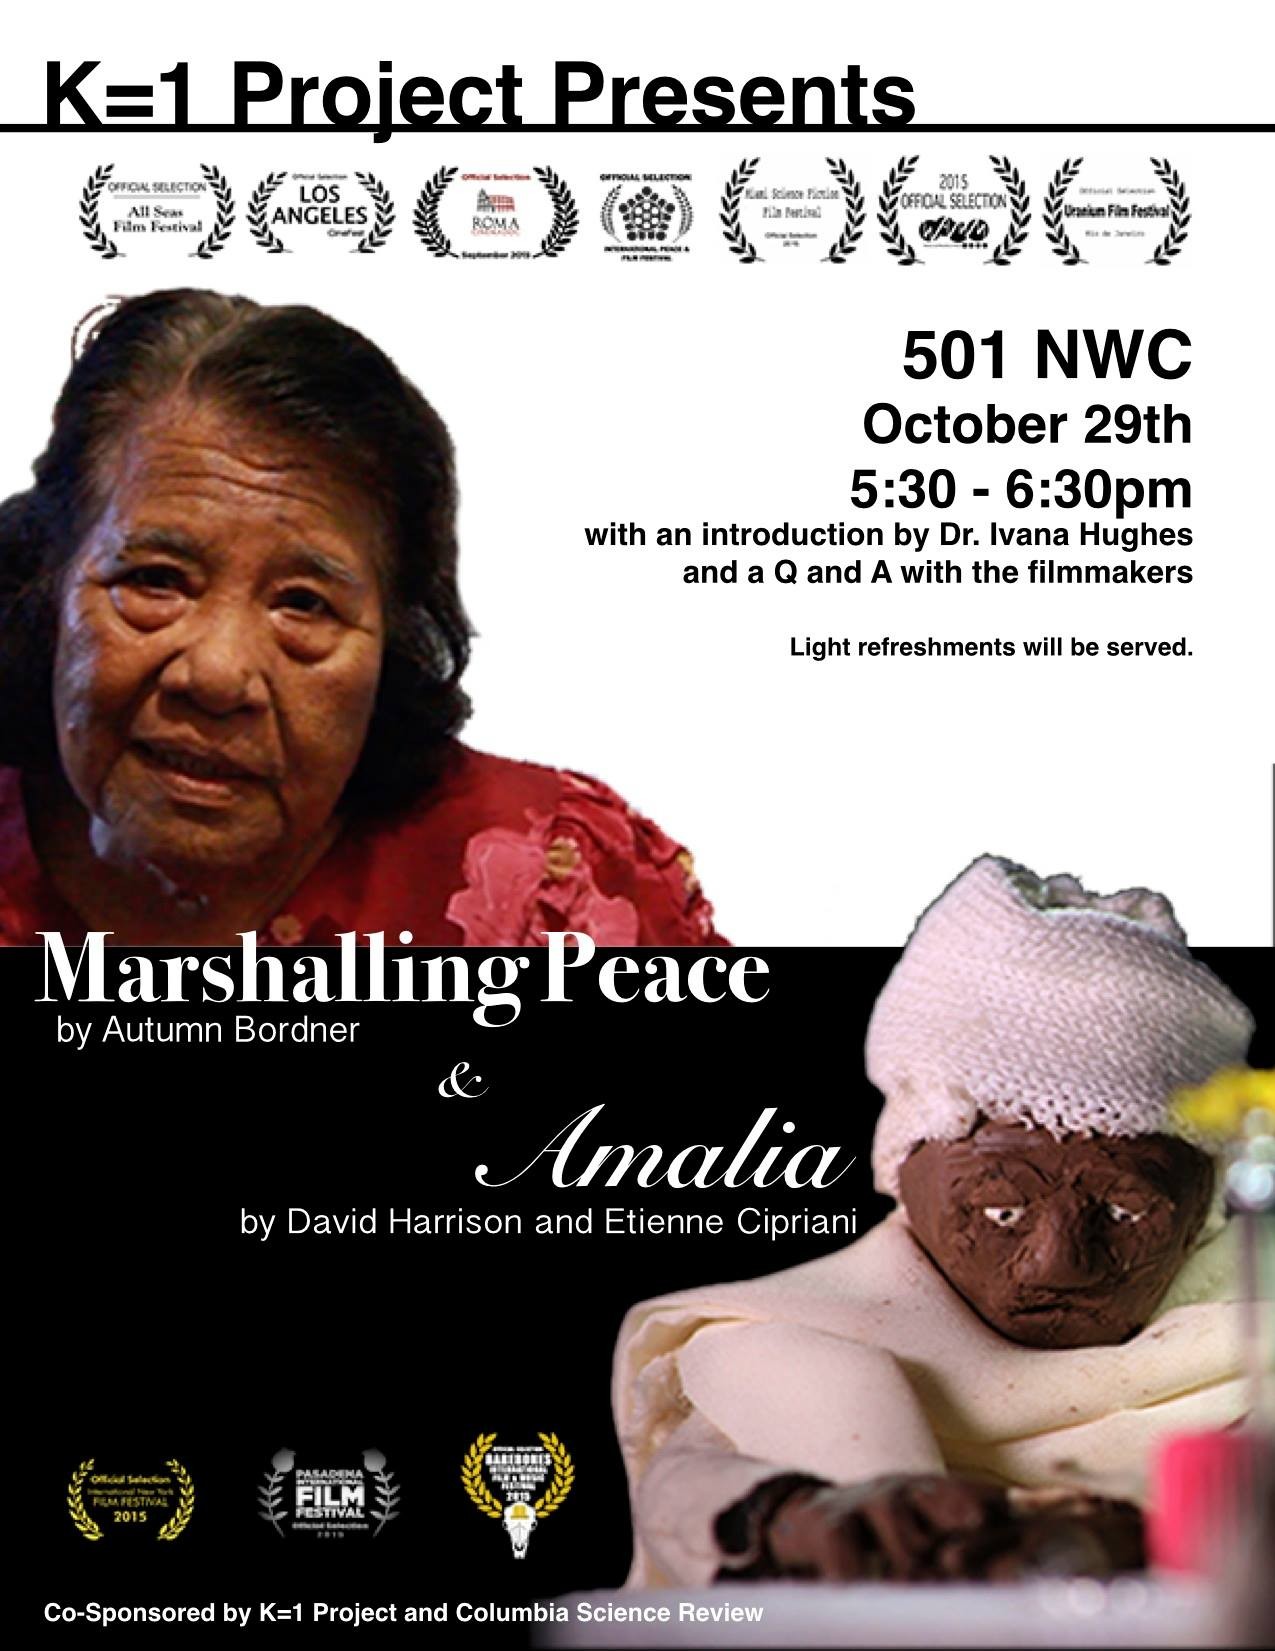 Marshalling Peace and Amalia